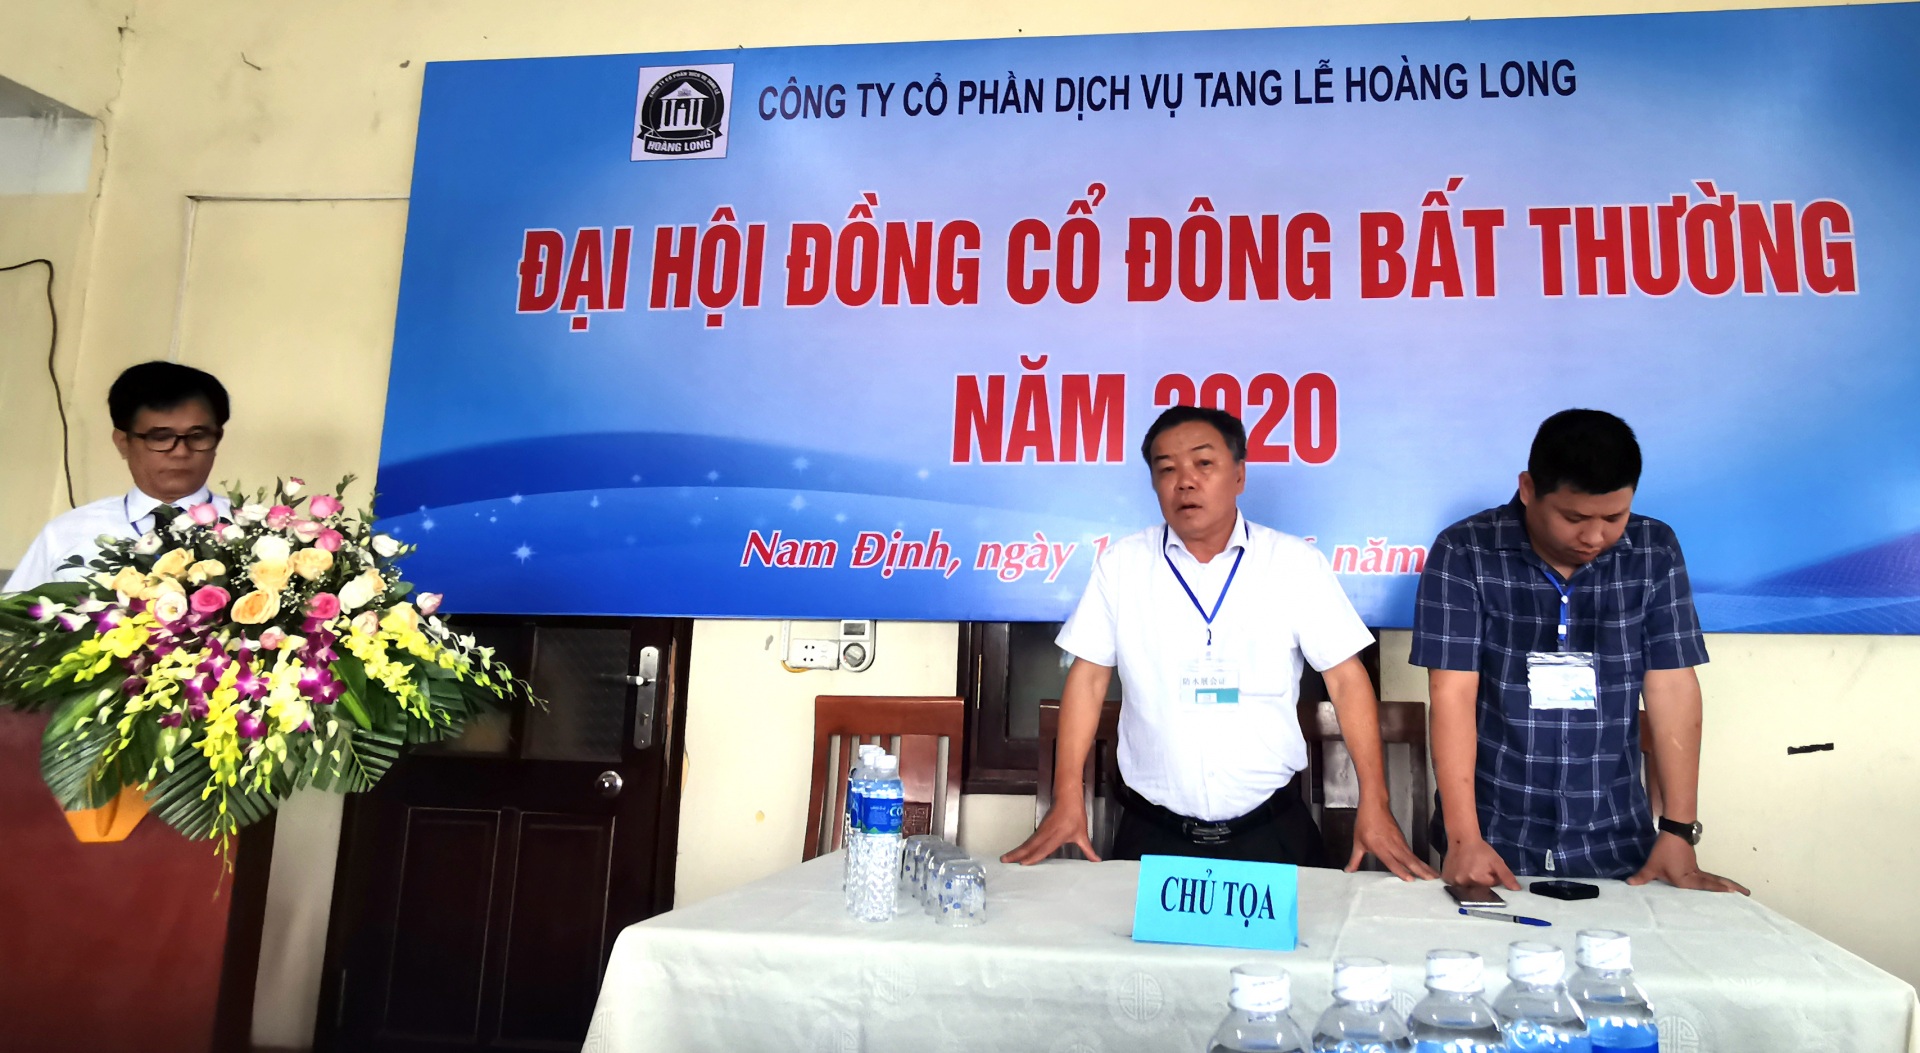 Nam Định: Cần làm rõ sự việc xảy ra tại Đài hóa thân Thanh Bình để đảm bảo quyền và lợi ích hợp pháp cho người lao động (Kỳ 6)